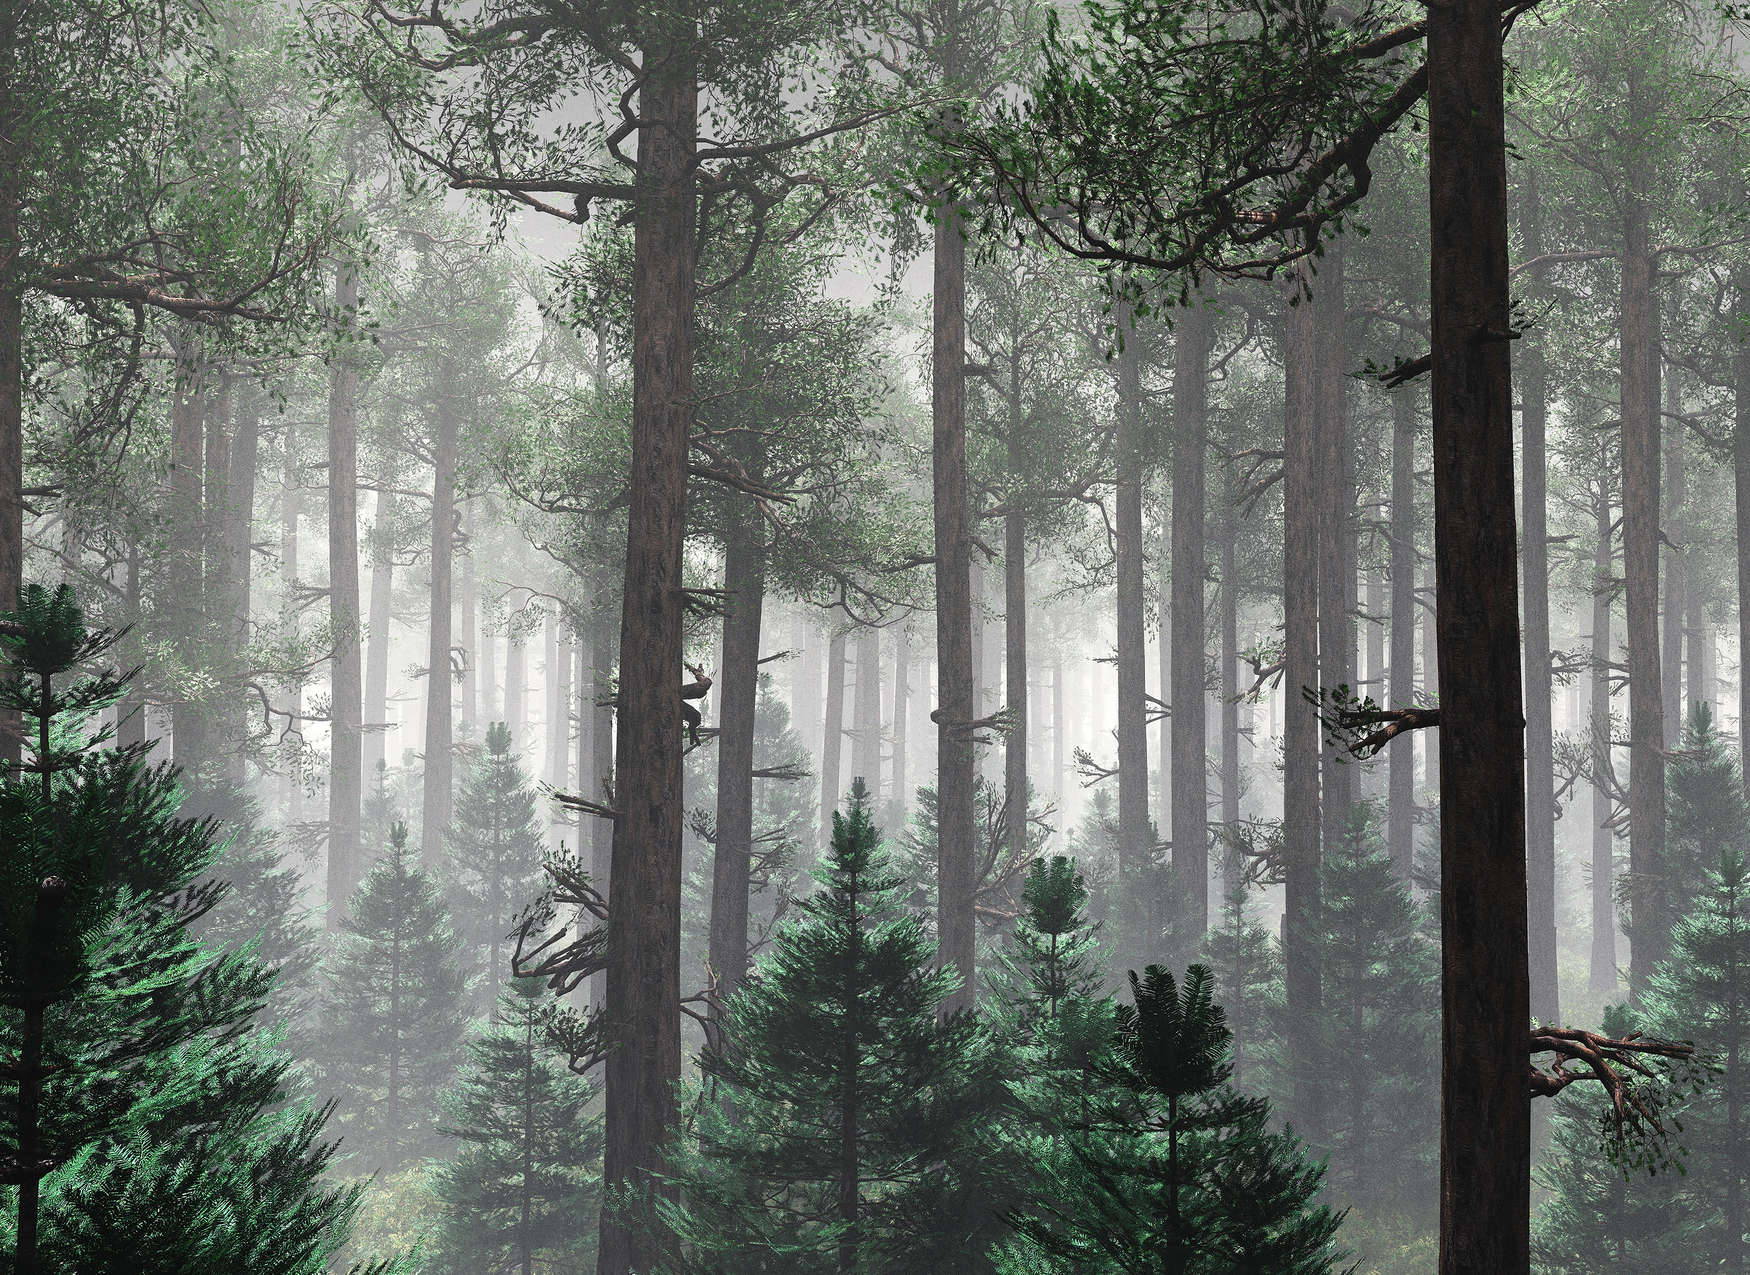             Digital behang Bos in de mist met grote bomen - Groen, Bruin, Grijs
        